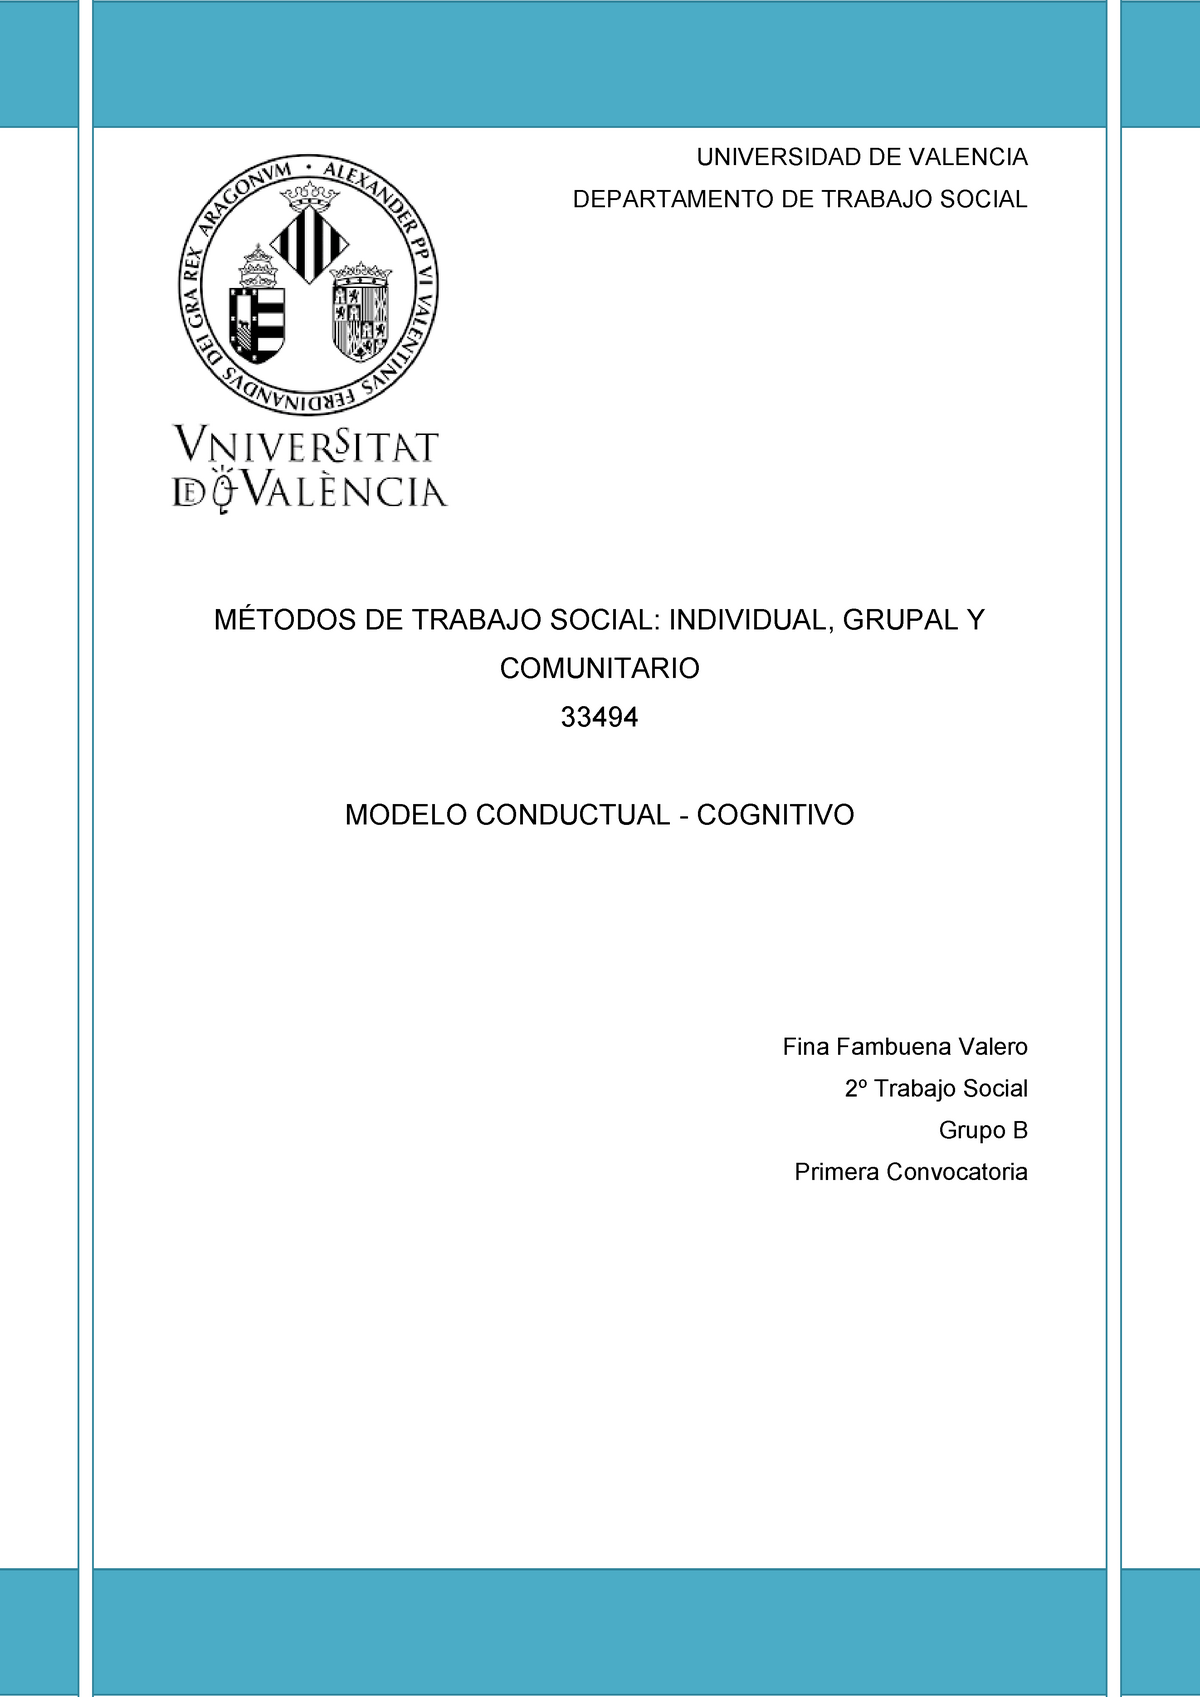 Modelo Conductual-Cognitivo - UNIVERSIDAD DE VALENCIA DEPARTAMENTO DE TRABAJO  SOCIAL MÉTODOS DE - Studocu